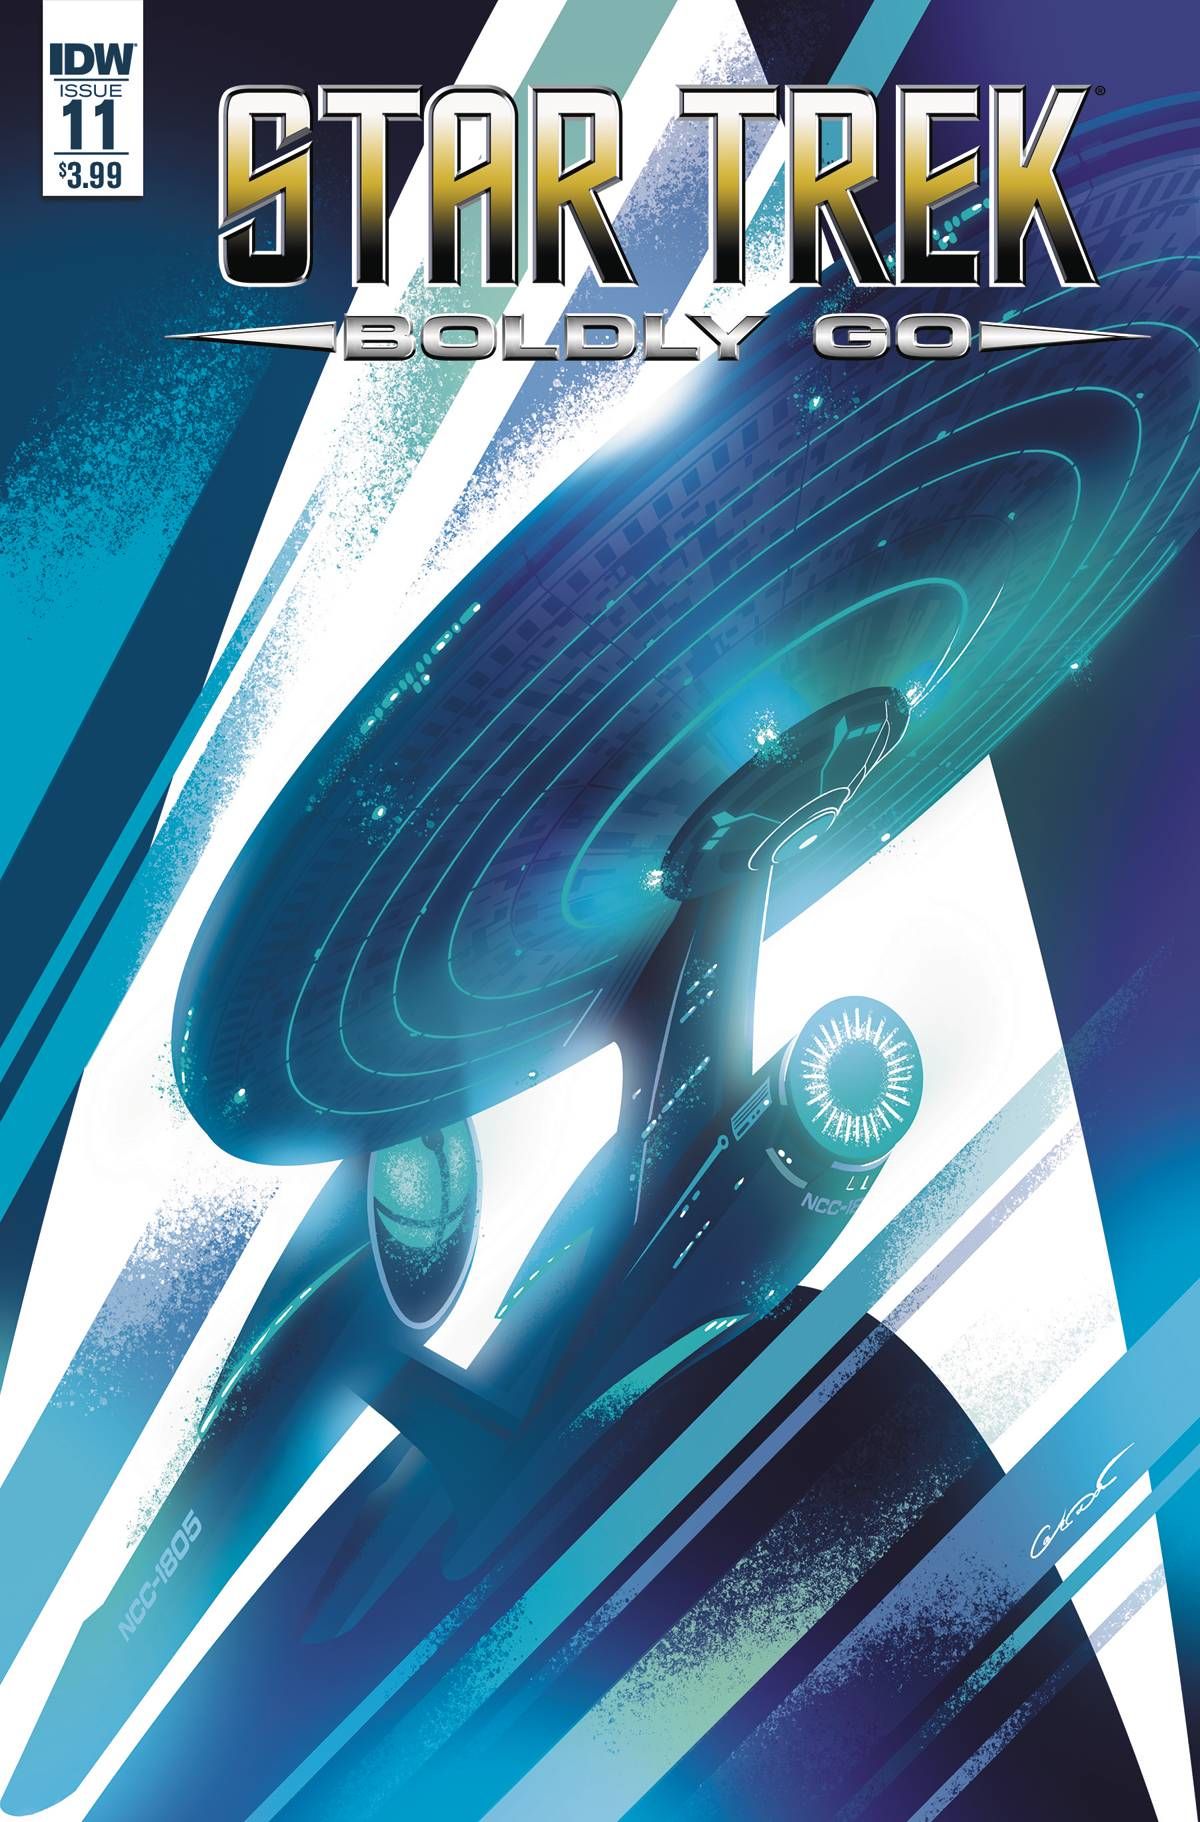 Star Trek: Boldly Go #11 Comic